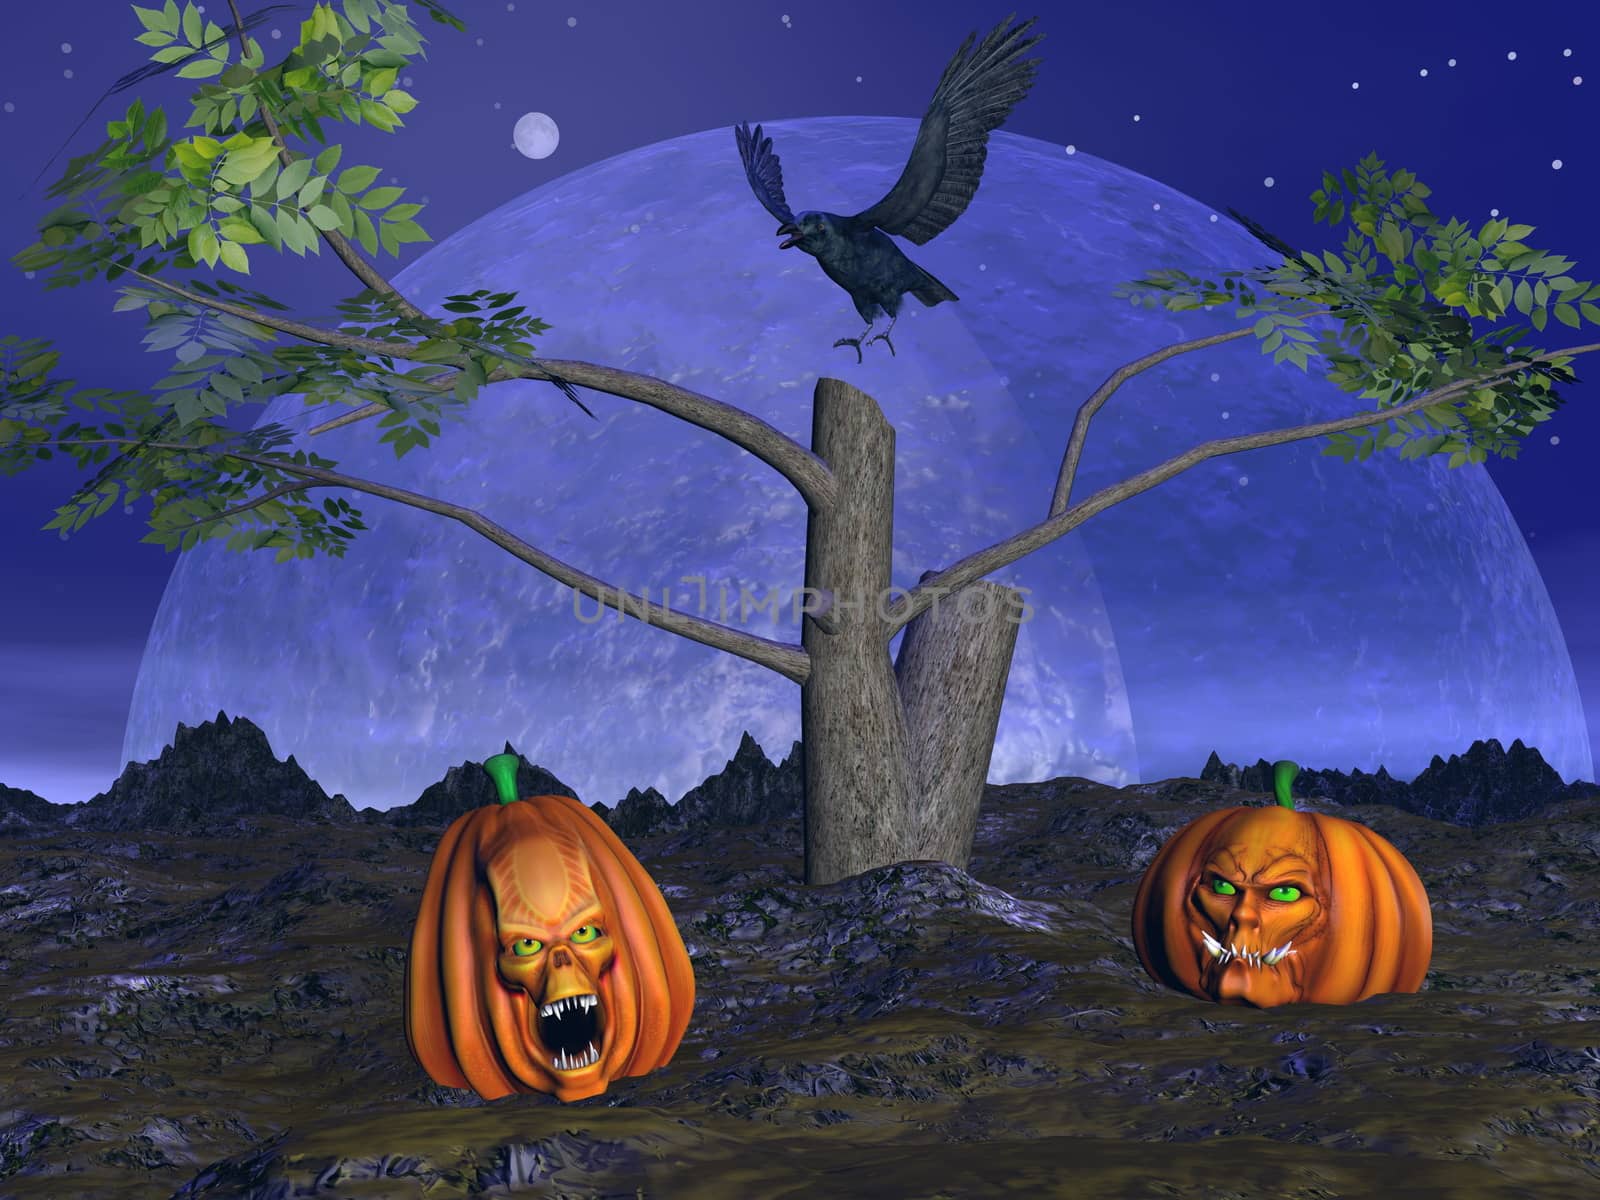 Halloween pumpkins scenery - 3D render by Elenaphotos21